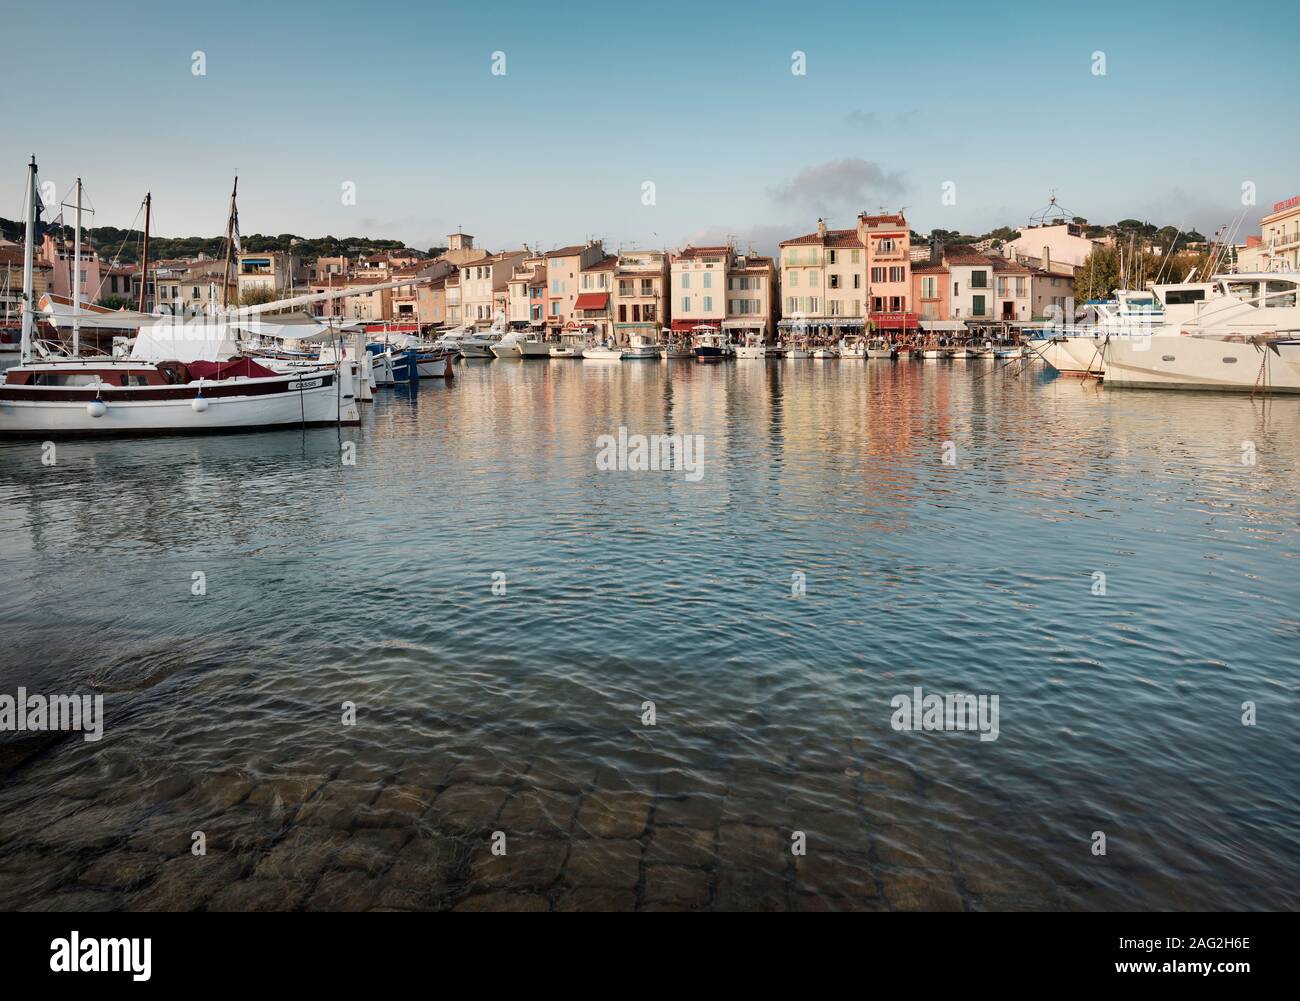 Port de cassis au bord de la ville port avec bateaux et maisons colorées, dans le sud de la France, l'Occitan. Photographie de voyages Cassis. Banque D'Images